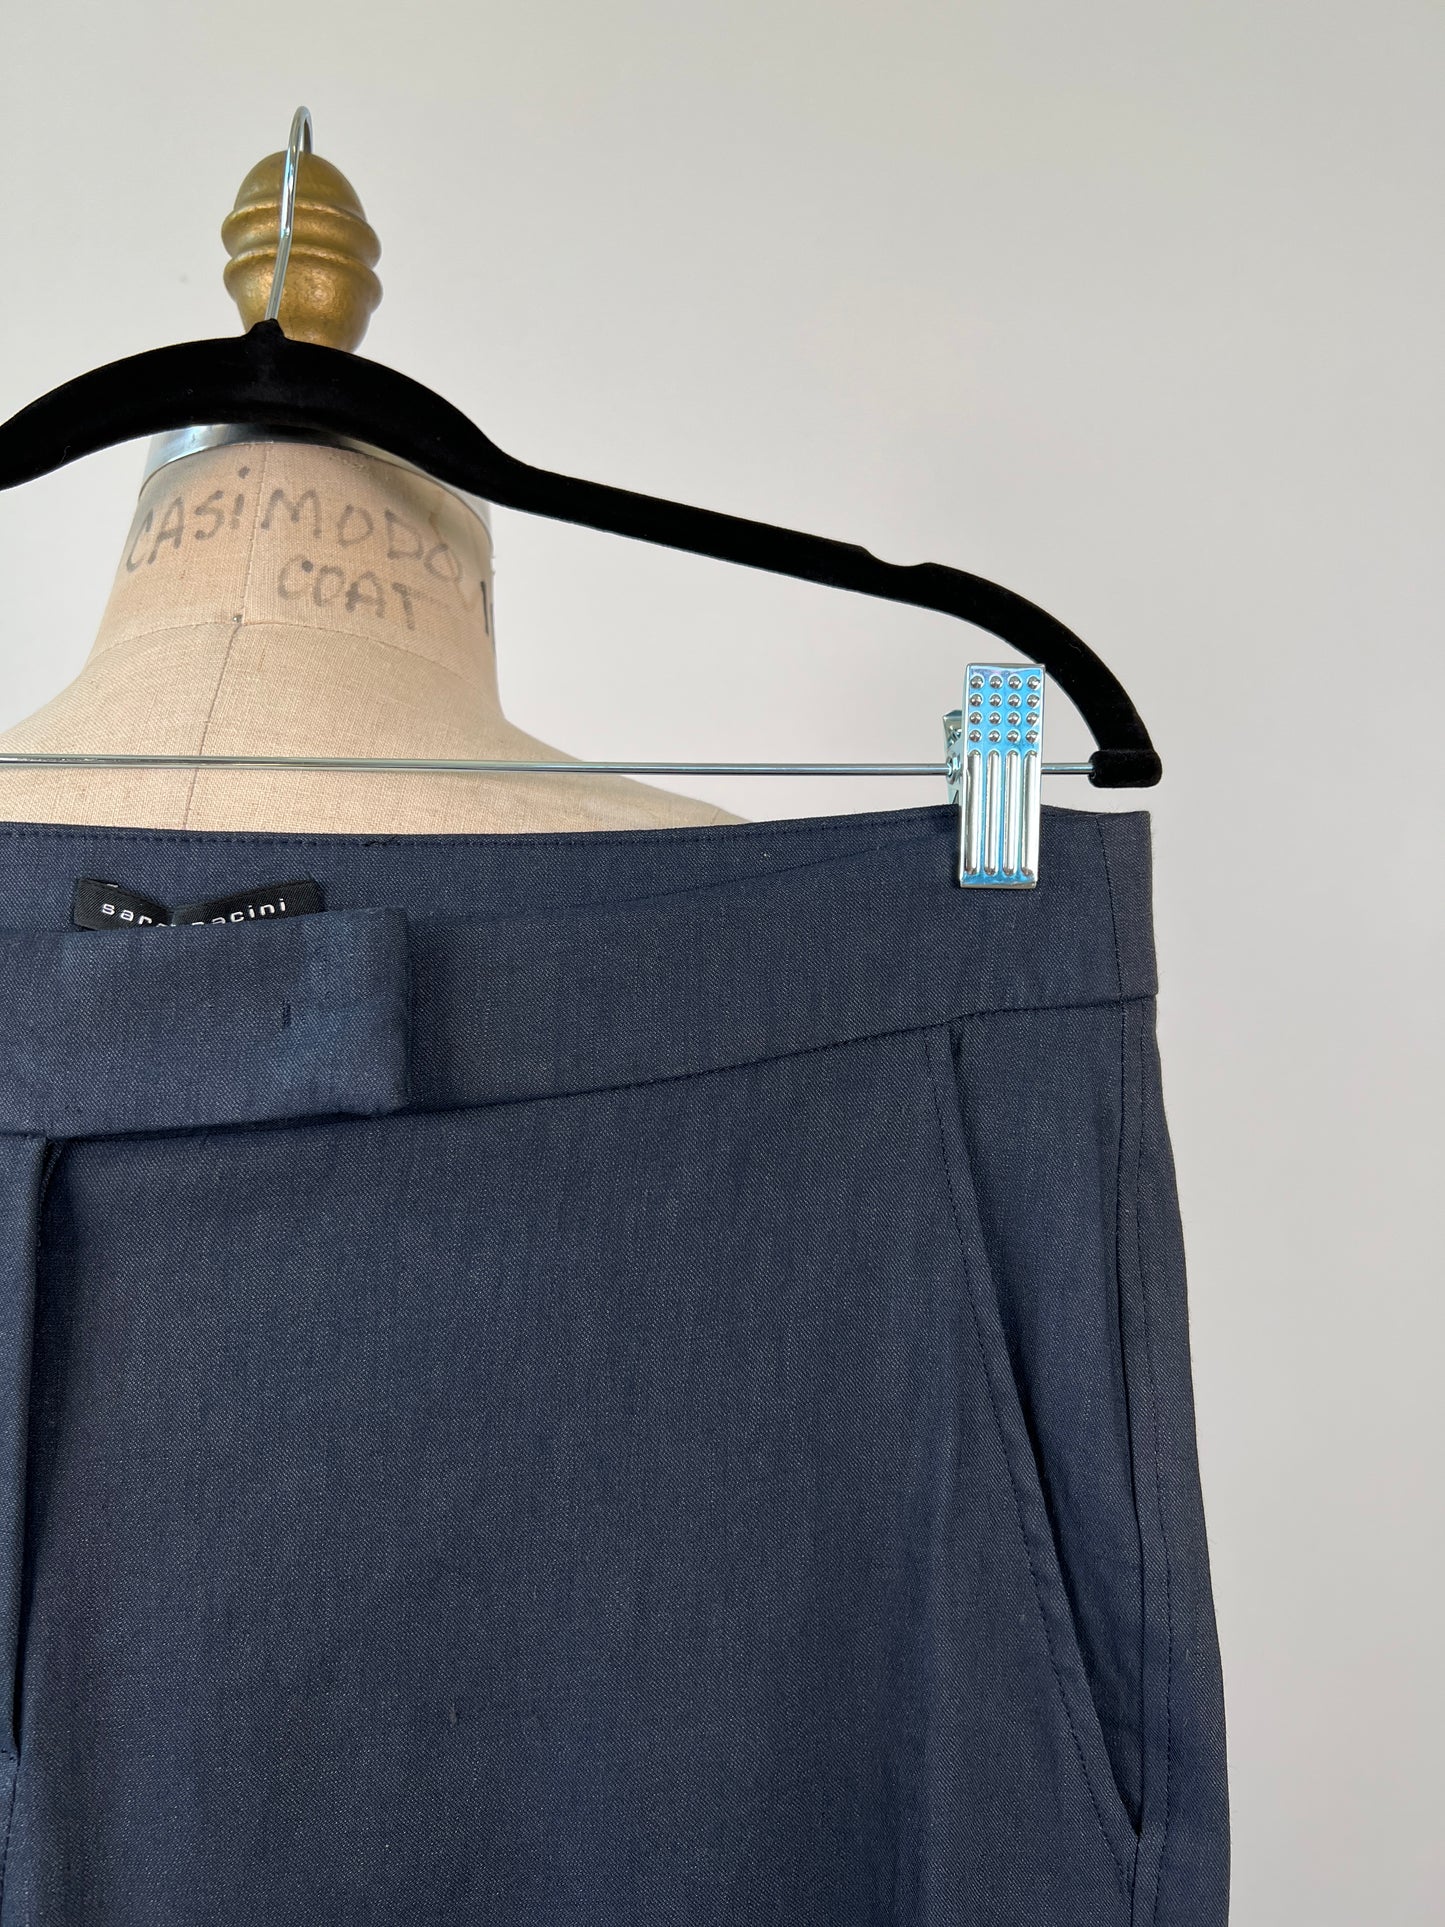 Pantalon marine en lin techno extensible tout confort (XS à M)